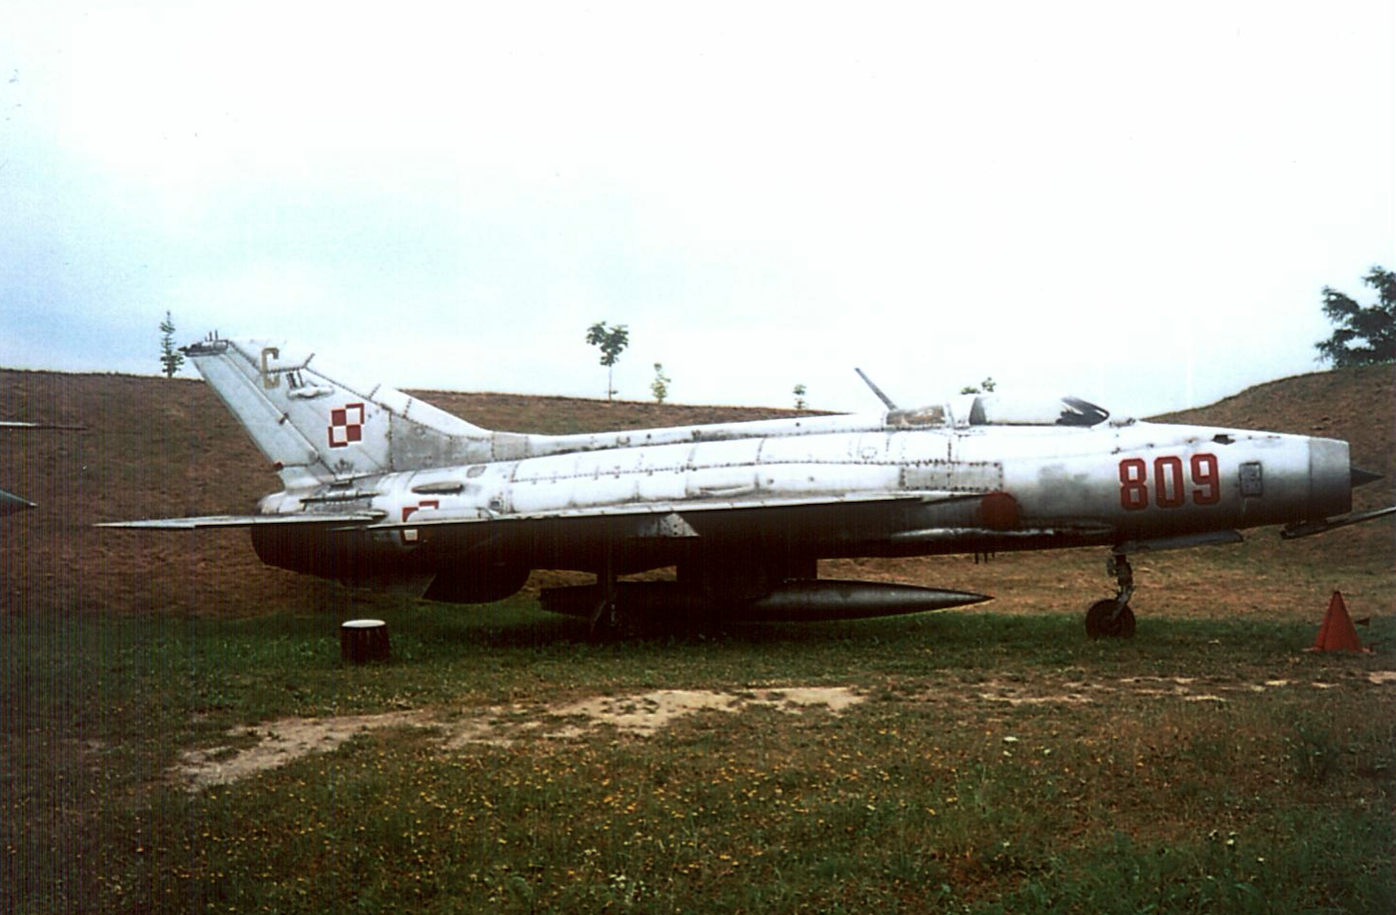 MiG-21 F-13 nb 809. 2002. Photo by Karol Placha Hetman